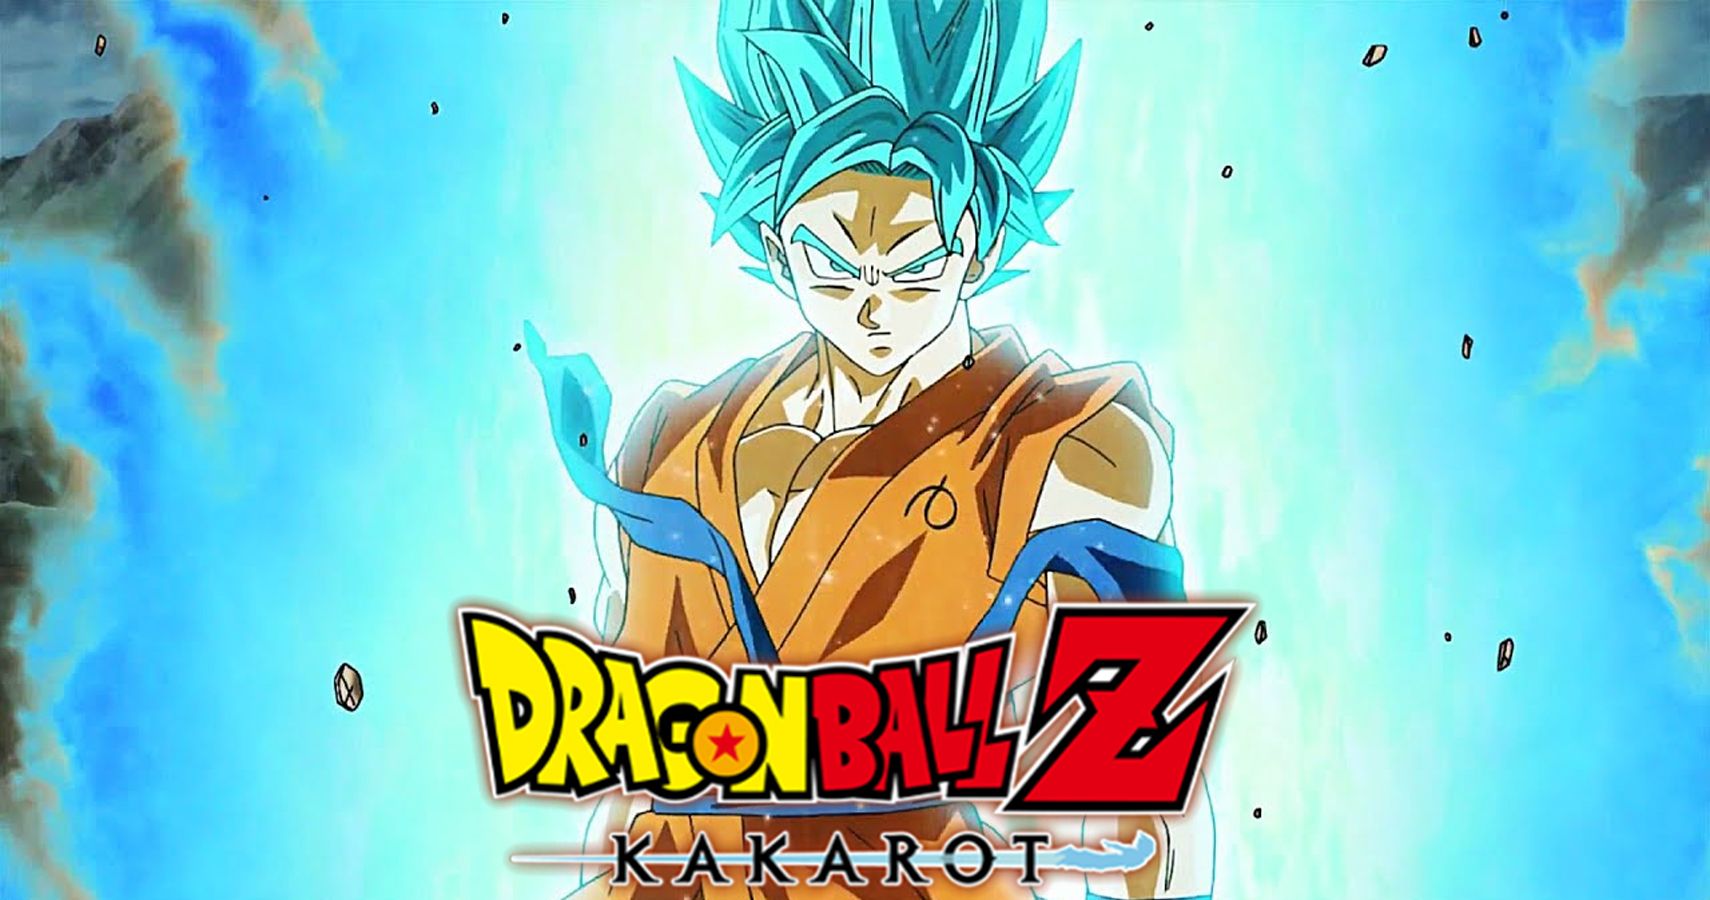 Dragon Ball Z Kakarots Second DLC Pack Adds SSGSS Goku And Vegeta